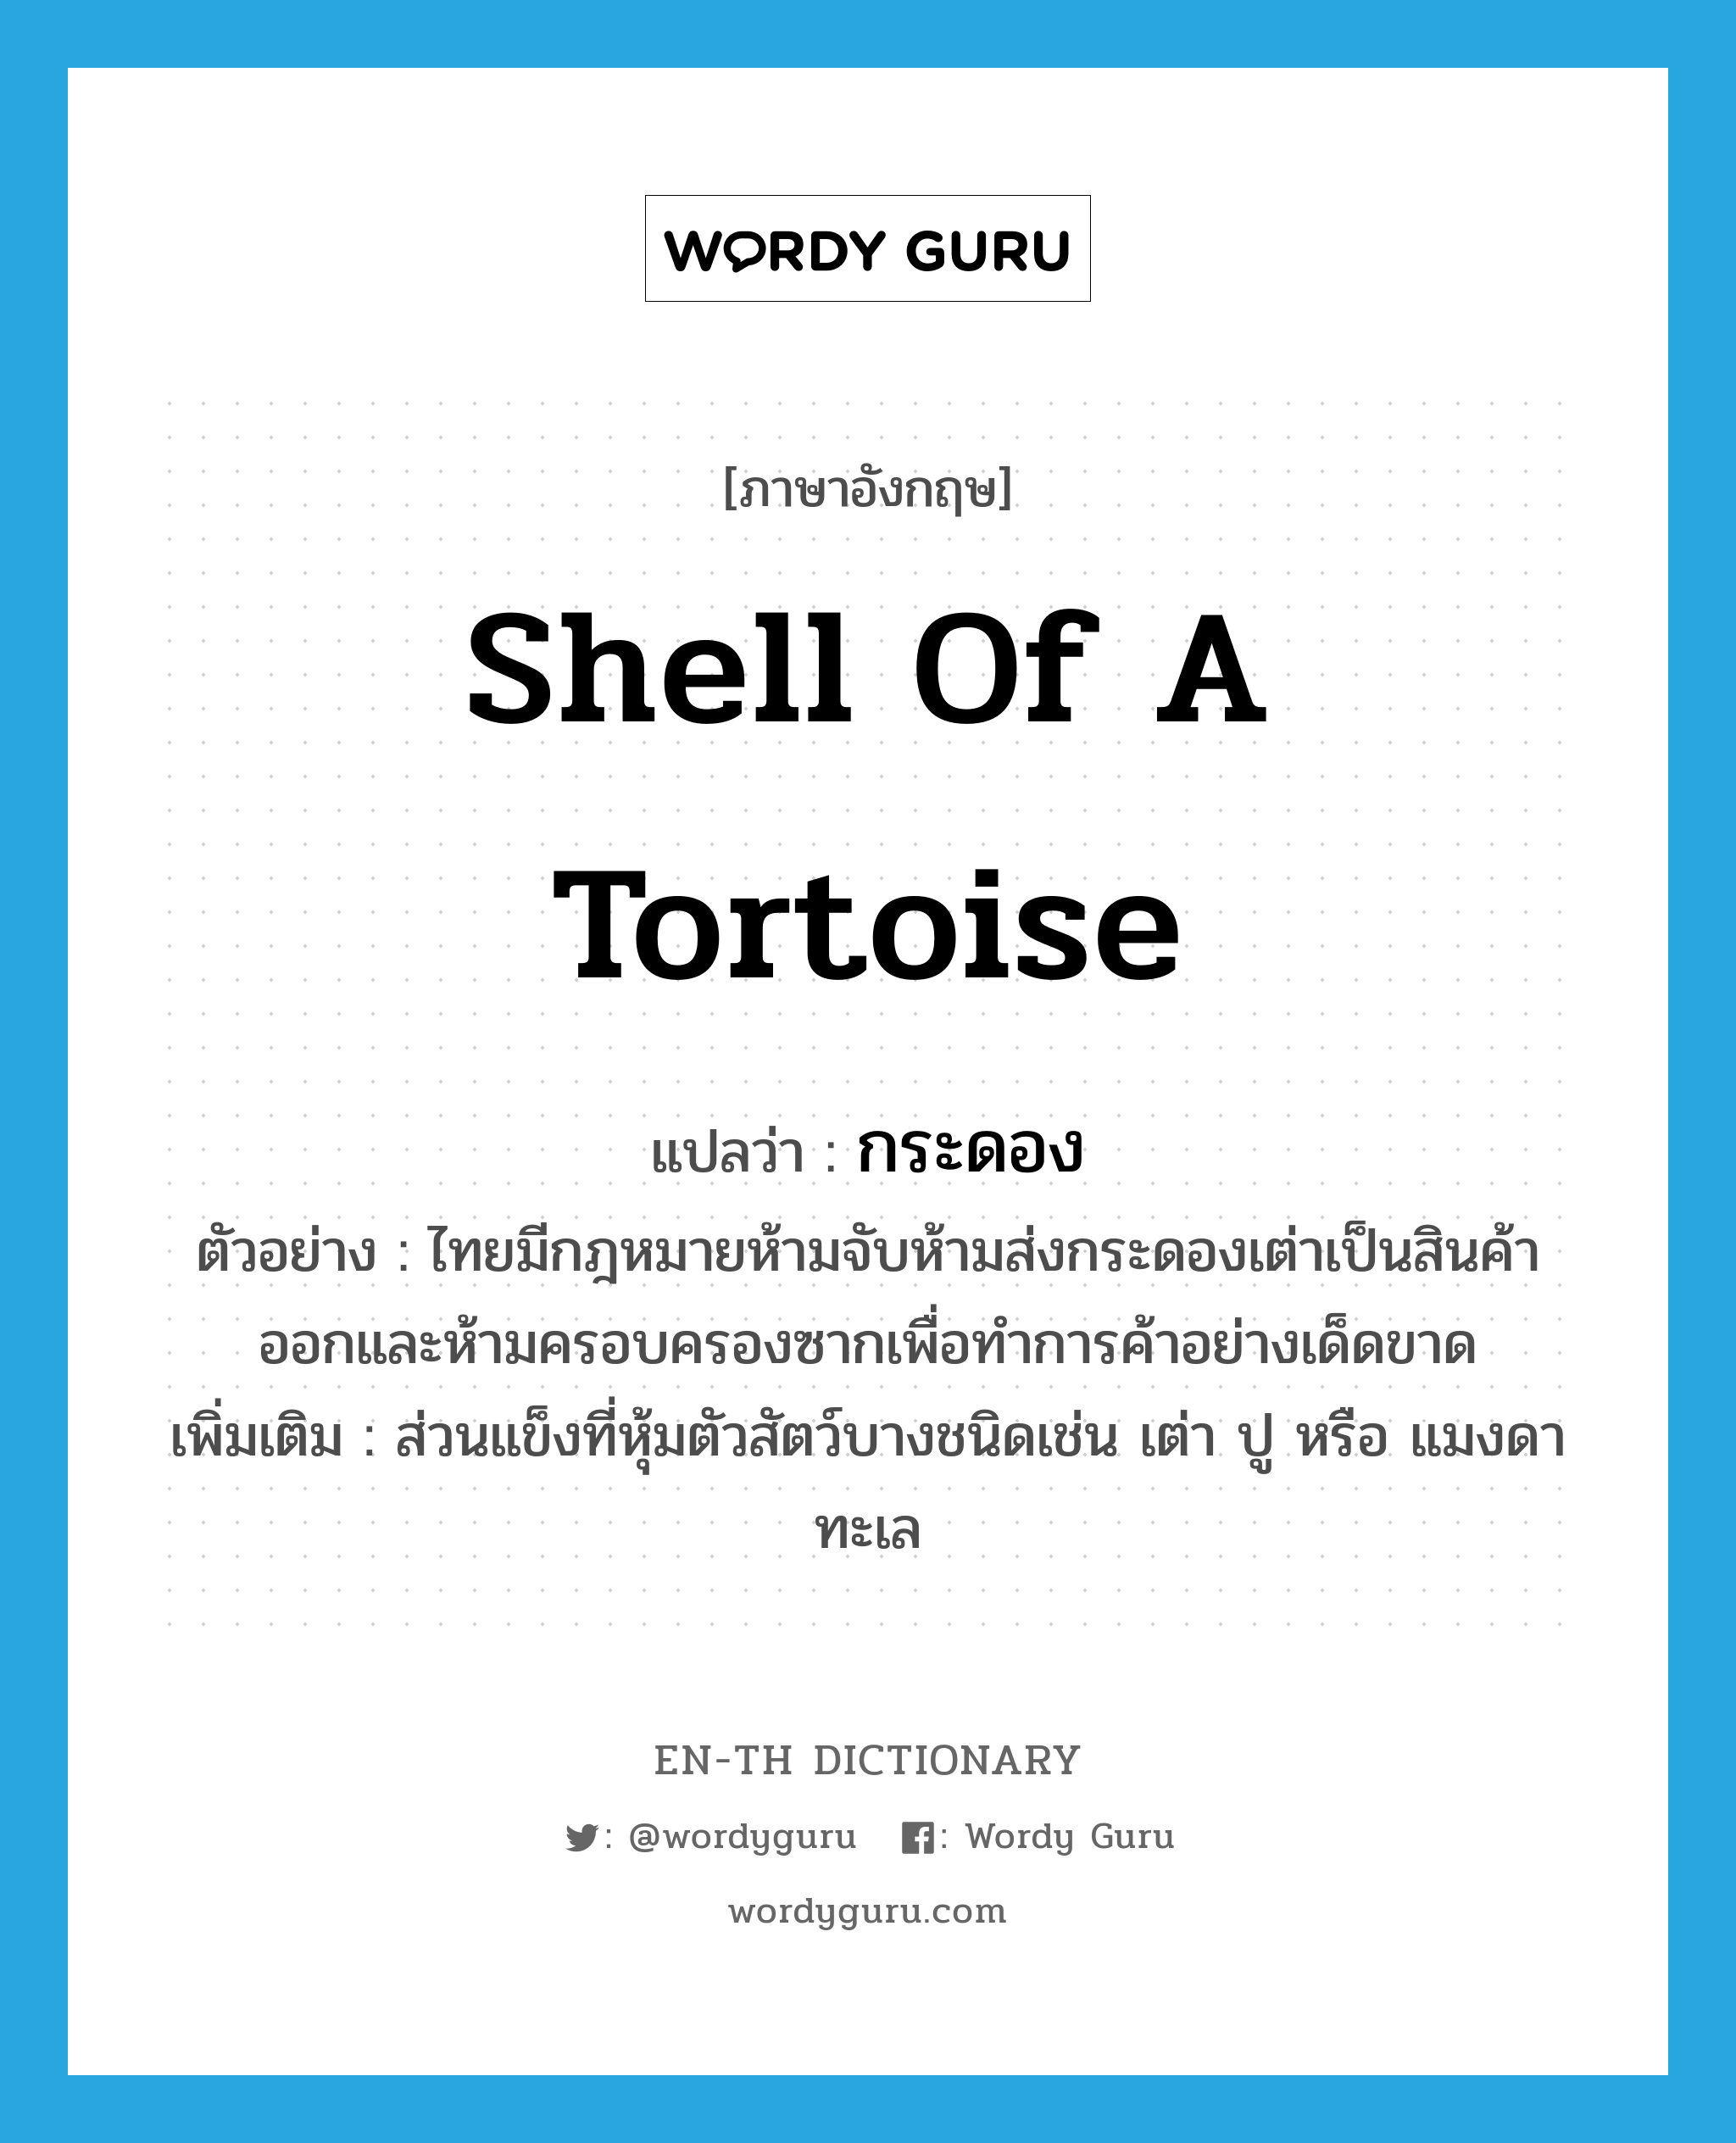 กระดอง ภาษาอังกฤษ?, คำศัพท์ภาษาอังกฤษ กระดอง แปลว่า shell of a tortoise ประเภท N ตัวอย่าง ไทยมีกฎหมายห้ามจับห้ามส่งกระดองเต่าเป็นสินค้าออกและห้ามครอบครองซากเพื่อทำการค้าอย่างเด็ดขาด เพิ่มเติม ส่วนแข็งที่หุ้มตัวสัตว์บางชนิดเช่น เต่า ปู หรือ แมงดาทะเล หมวด N